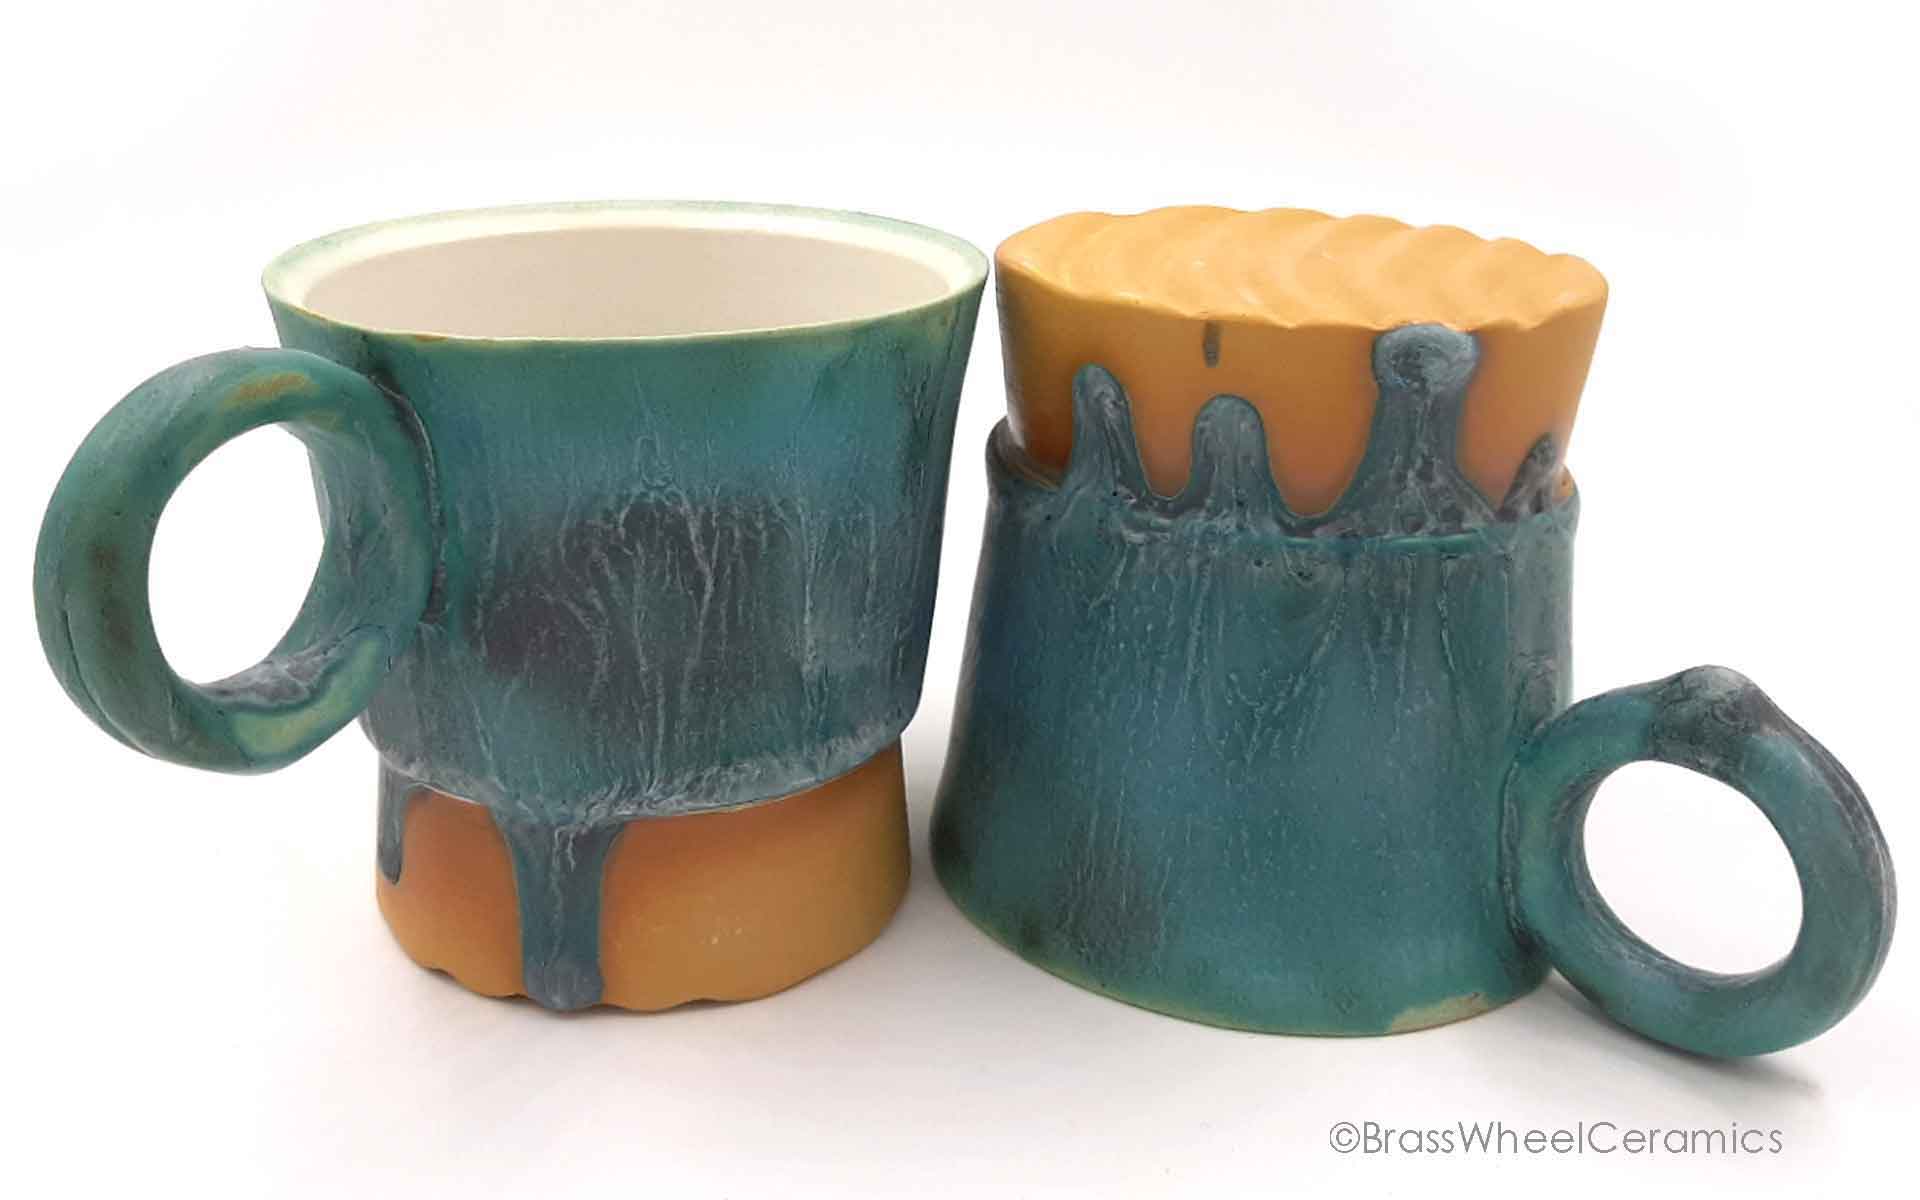 Estudio: ¿Por qué el esmalte de tazas de cerámica afecta la salud?